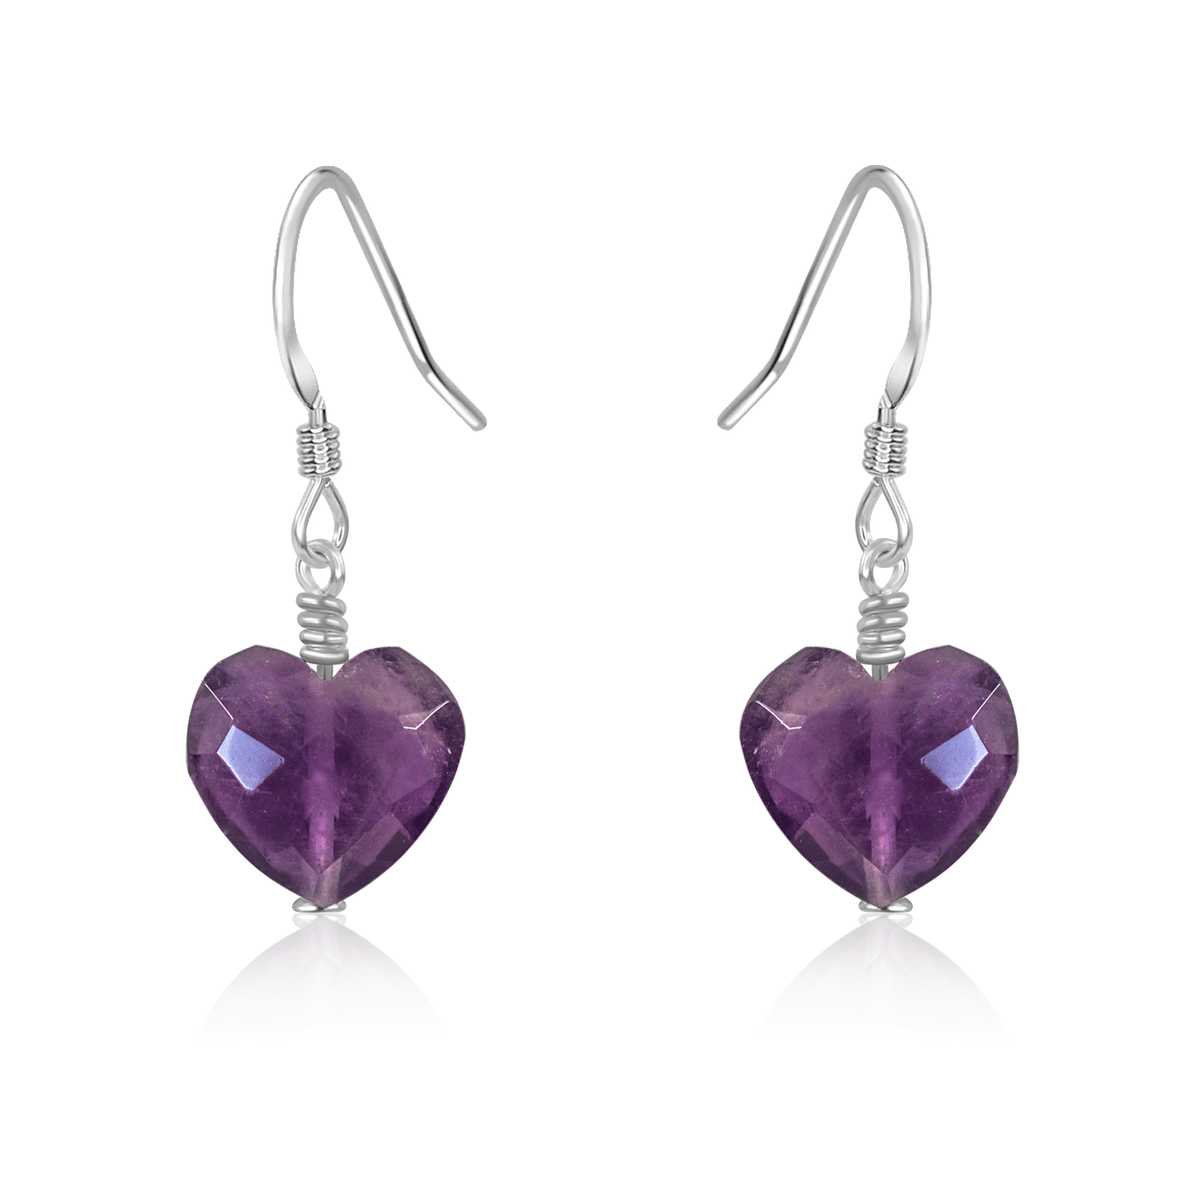 Amethyst Crystal Heart Dangle Earrings - Amethyst Crystal Heart Dangle Earrings - Sterling Silver - Luna Tide Handmade Crystal Jewellery